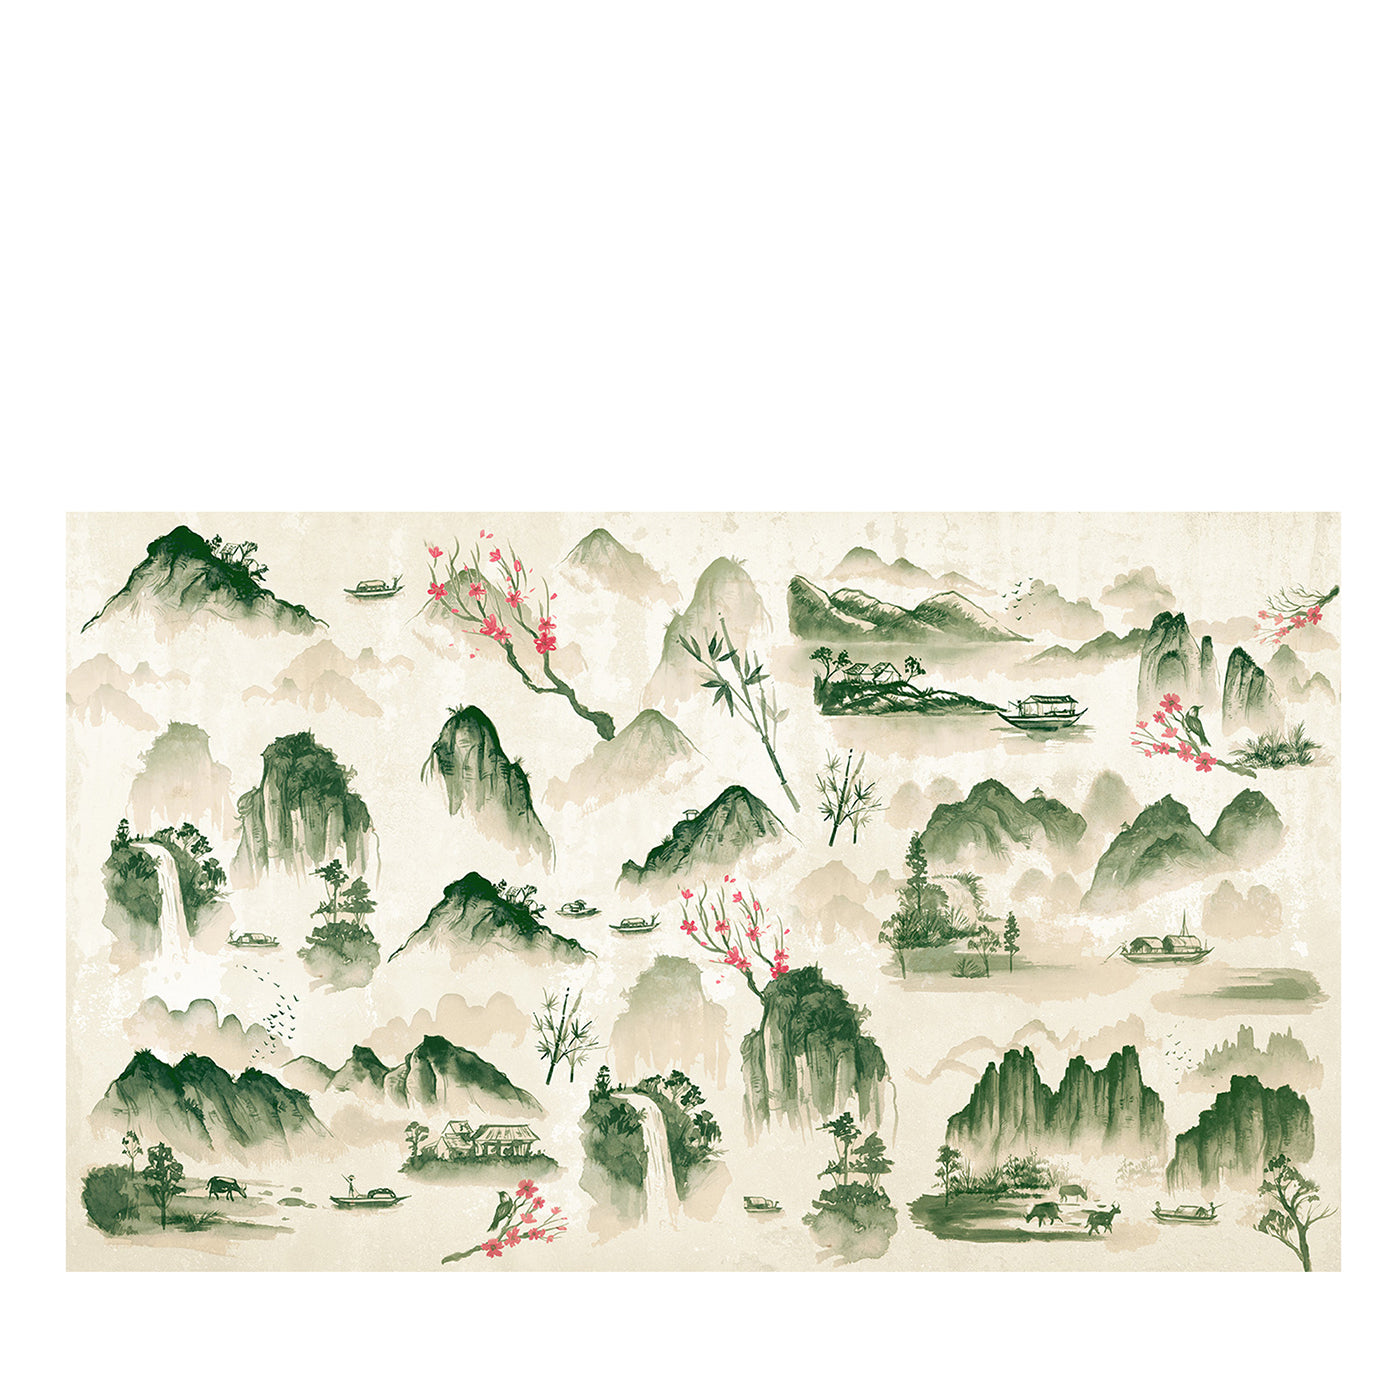 Papel pintado Kunisaki de Matteo Stucchi nº 2 - Vista principal